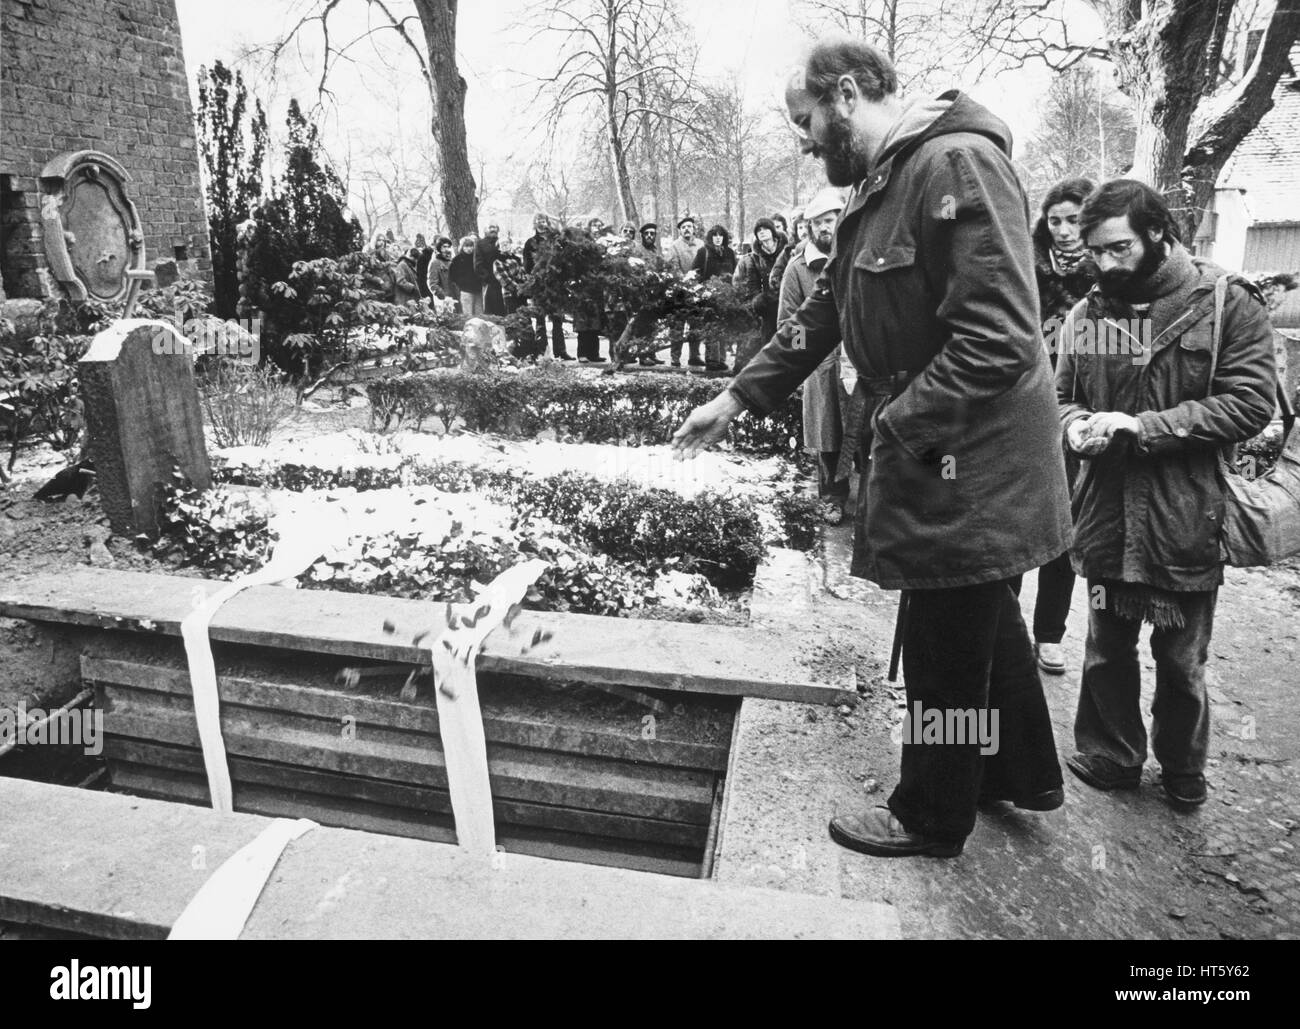 Berlin, le 3 janvier 1980 - Burial de RUDI DUTSCHKE (* 7. März 1940; † 24. Dezember 1979) au cimetière de Saint-Annen à Berlin-Dahlem. Rudi Dutschke était le porte-parole le plus éminent du mouvement étudiant allemand des années 1960. Horst Mahler (devant) à la tombe ouverte Banque D'Images